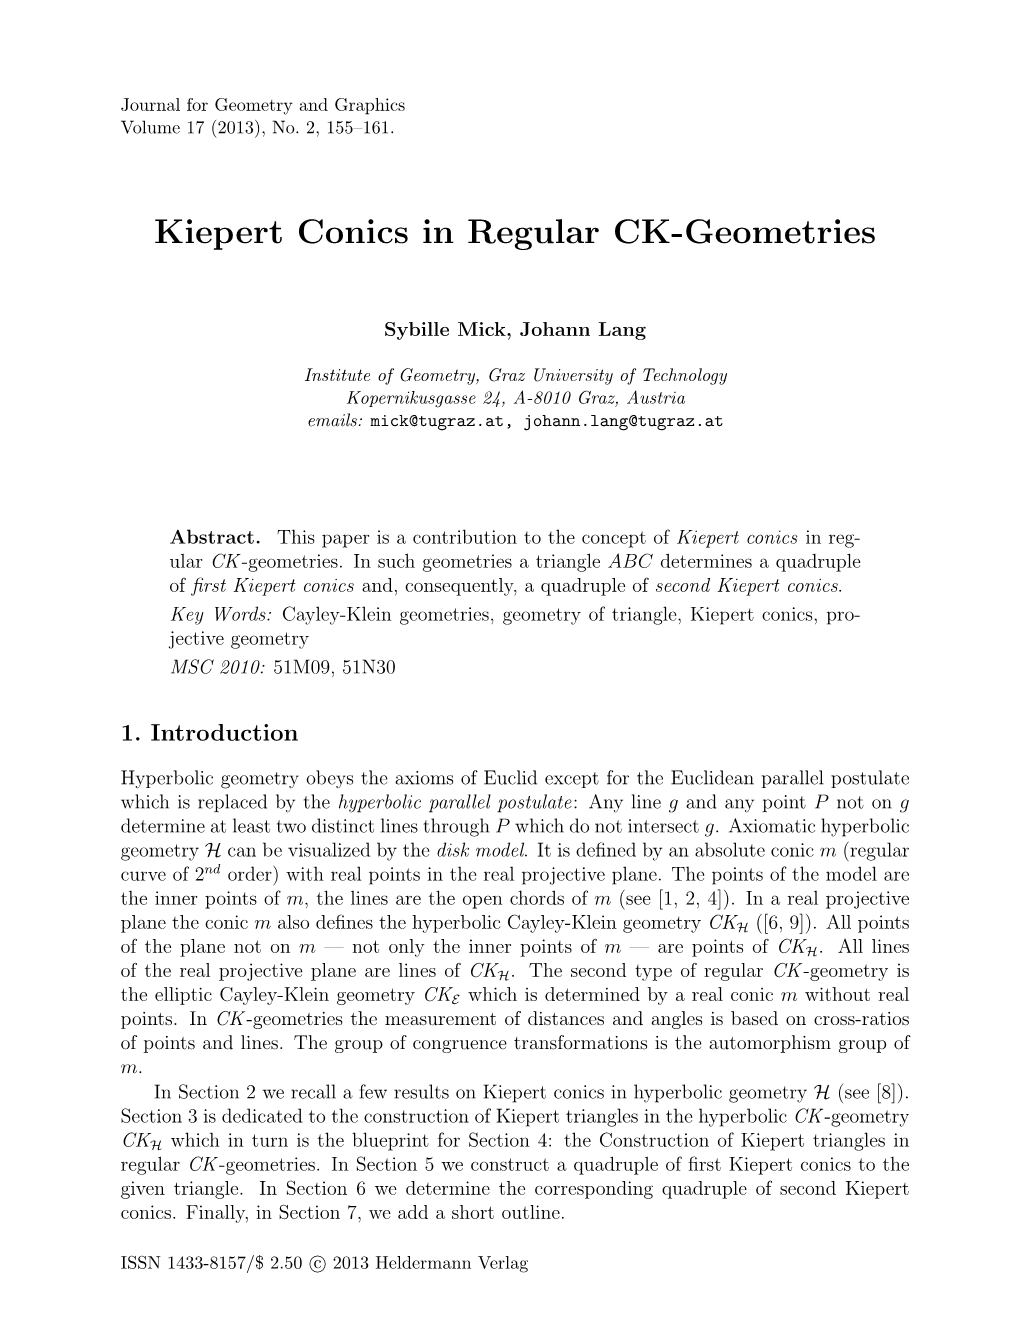 Kiepert Conics in Regular CK-Geometries